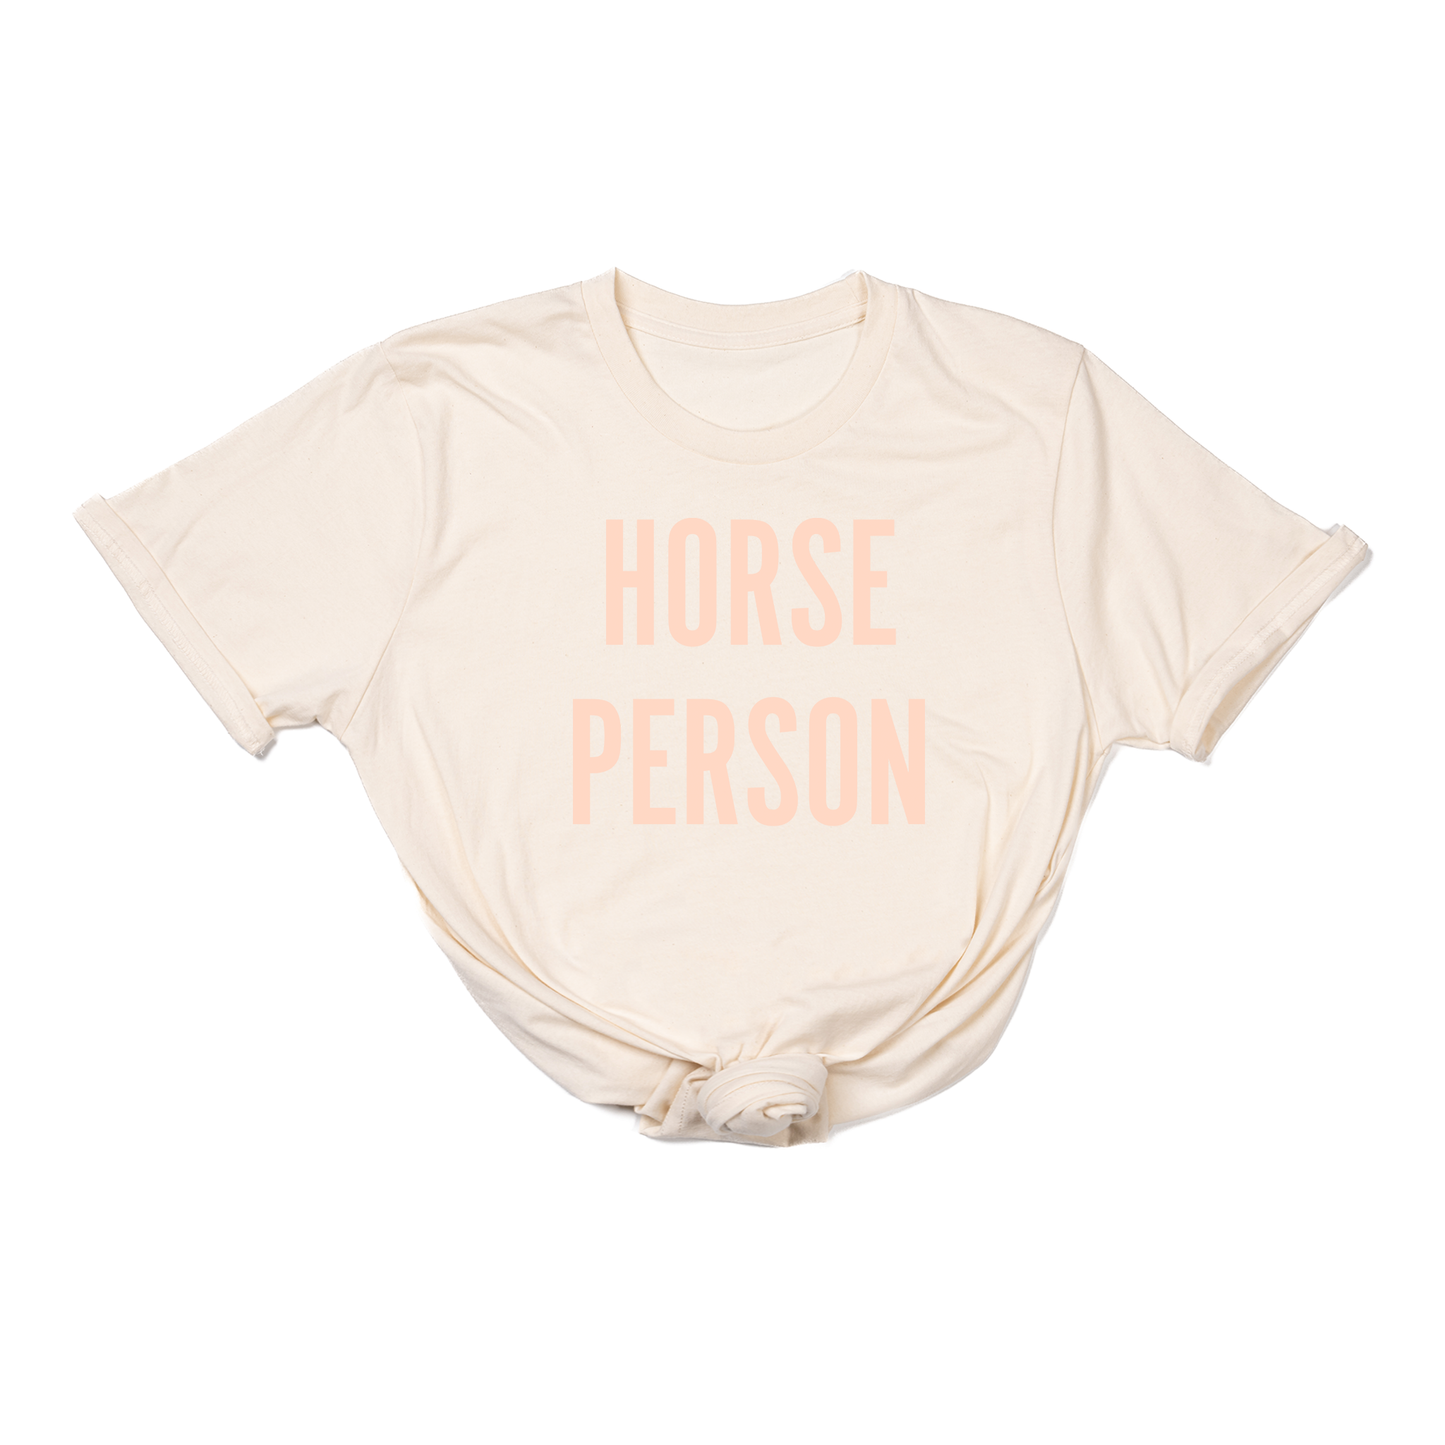 Horse Person (Peach) - Tee (Natural)